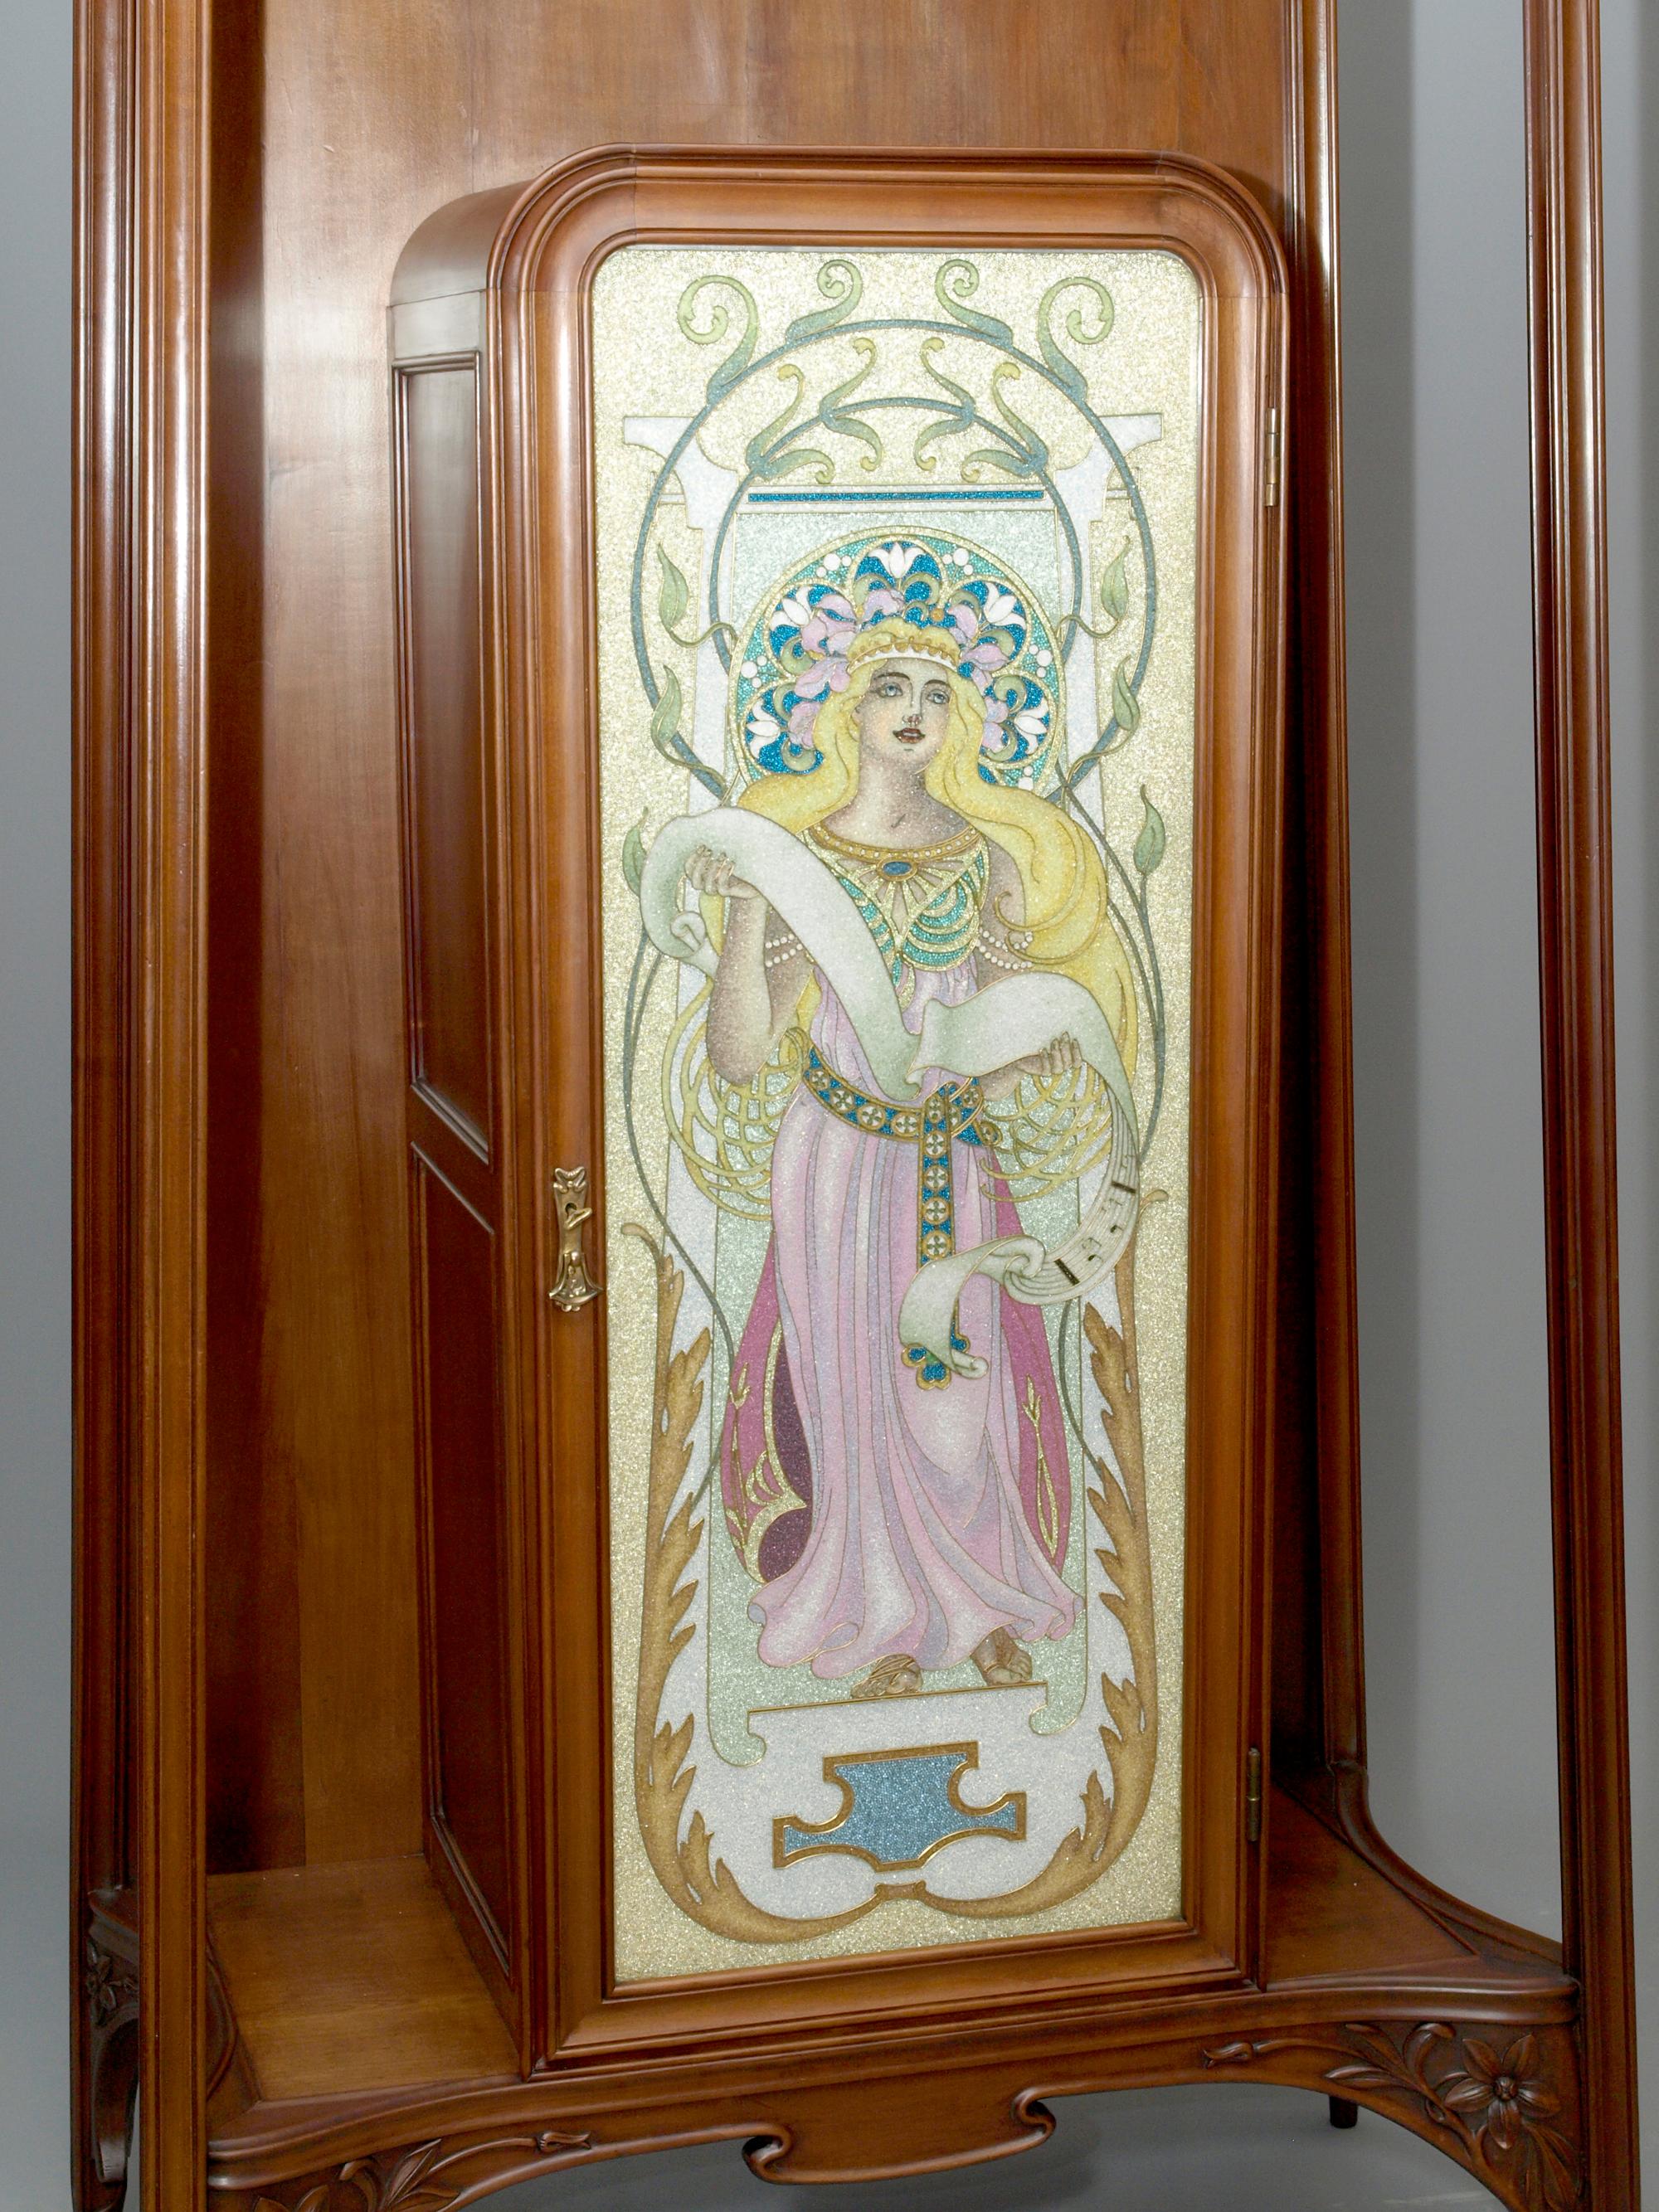 Edler Jugendstil Salonschrank mit floralen Schnitzereien und feiner Cloisonné-Glasarbeit, Louis Majorelle zugeschrieben, Nancy um 1900-1907.

Der Salonschrank besteht aus einem Rahmengestell aus Amerikanischem Kirschbaum, in dessen Zentrum ein